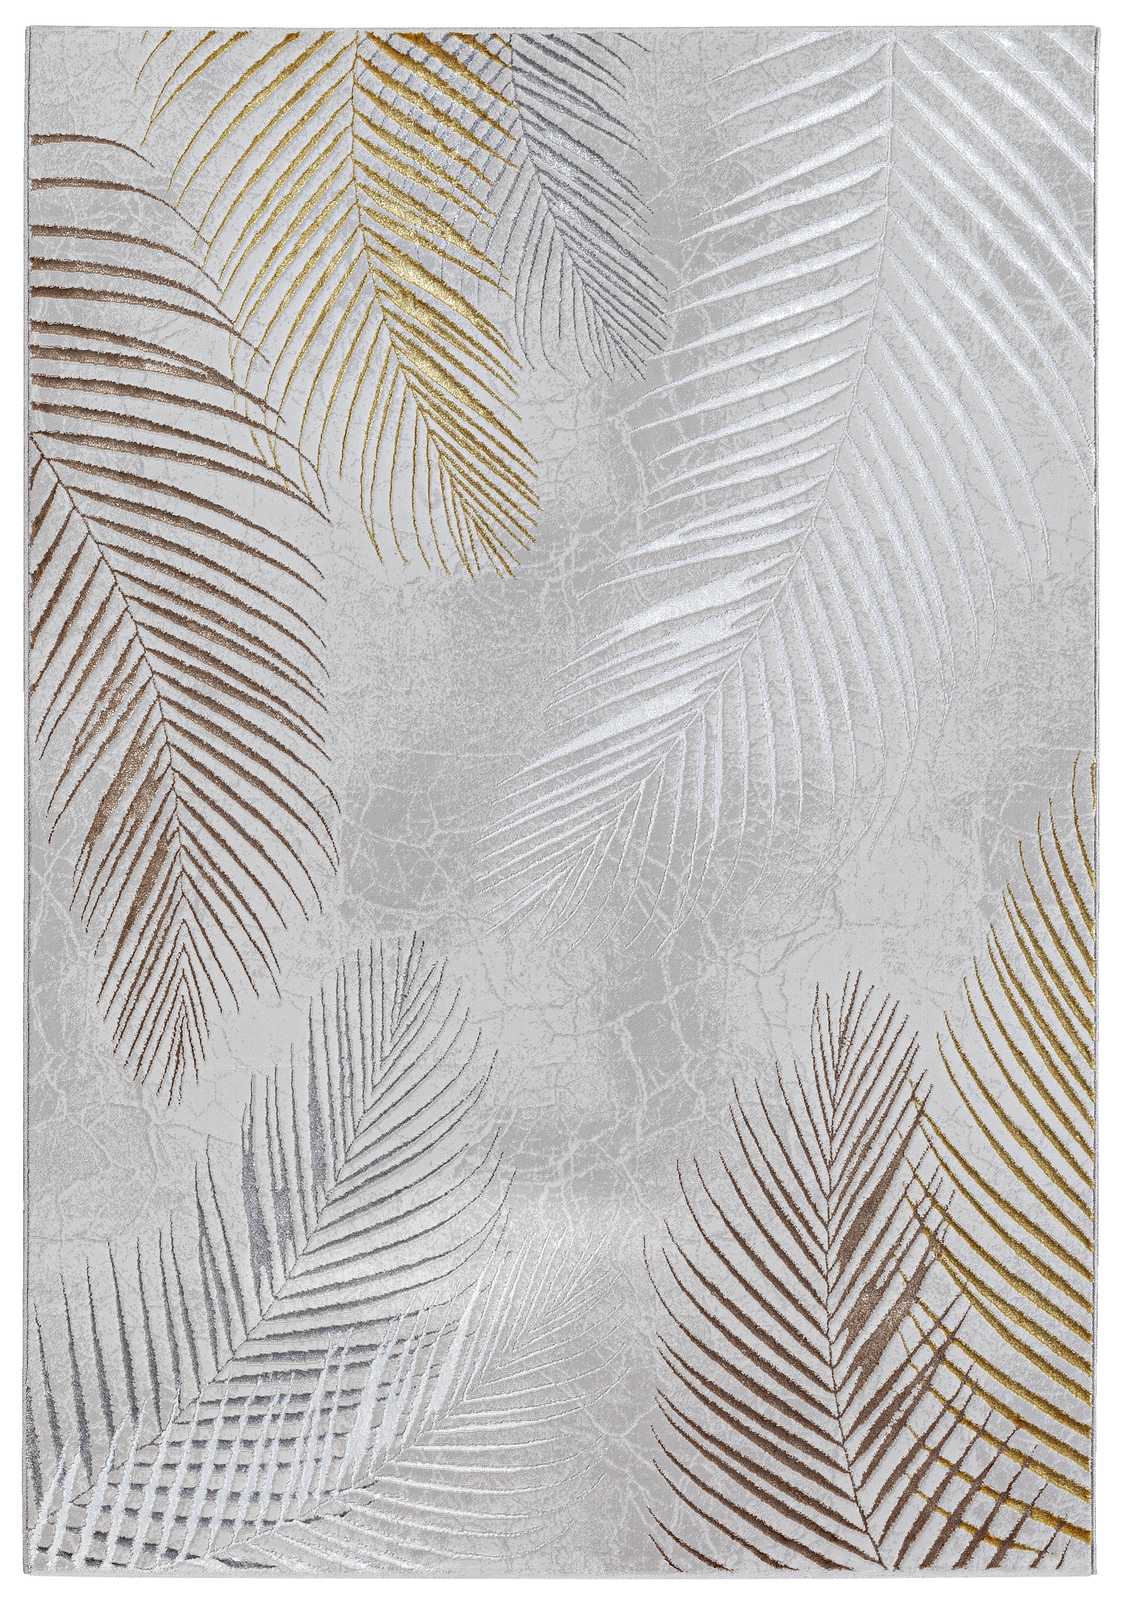             Tapis à poils longs doux et moelleux en gris comme tapis de passage - 340 x 240 cm
        